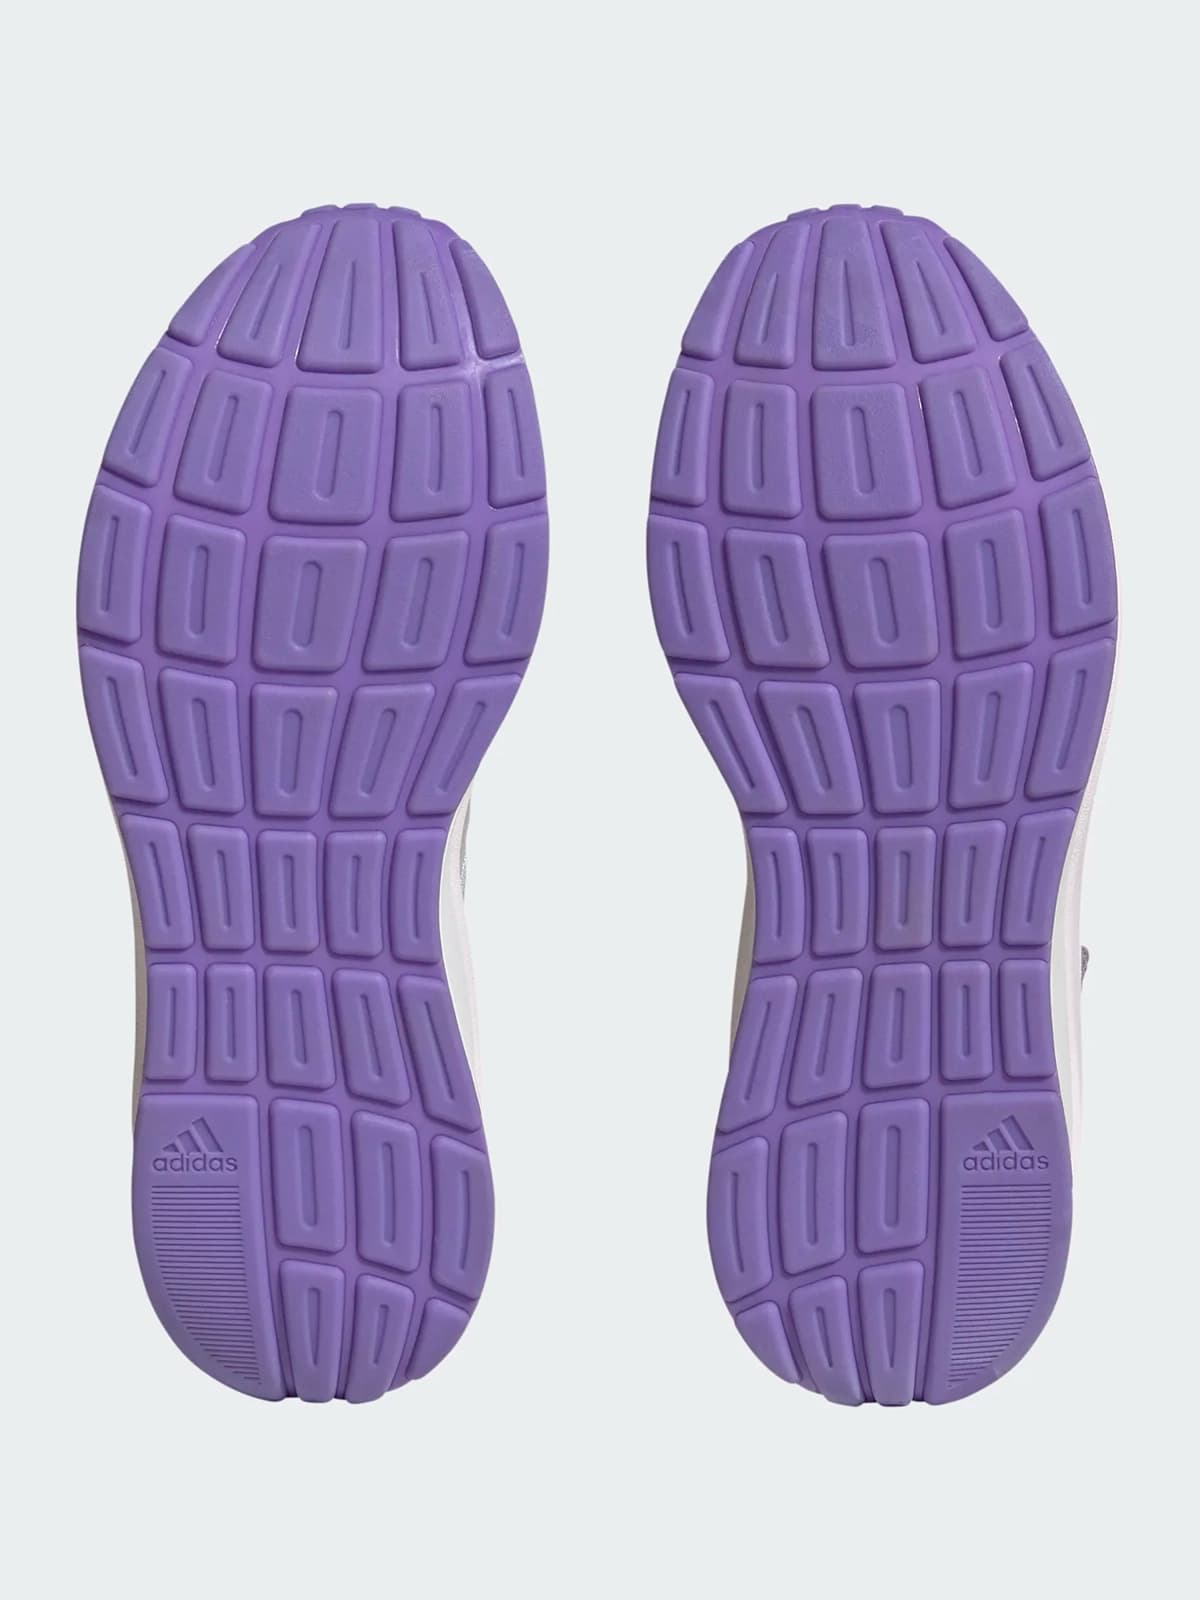 Znchill Shoes Spor Ayakkabı - Stilefit